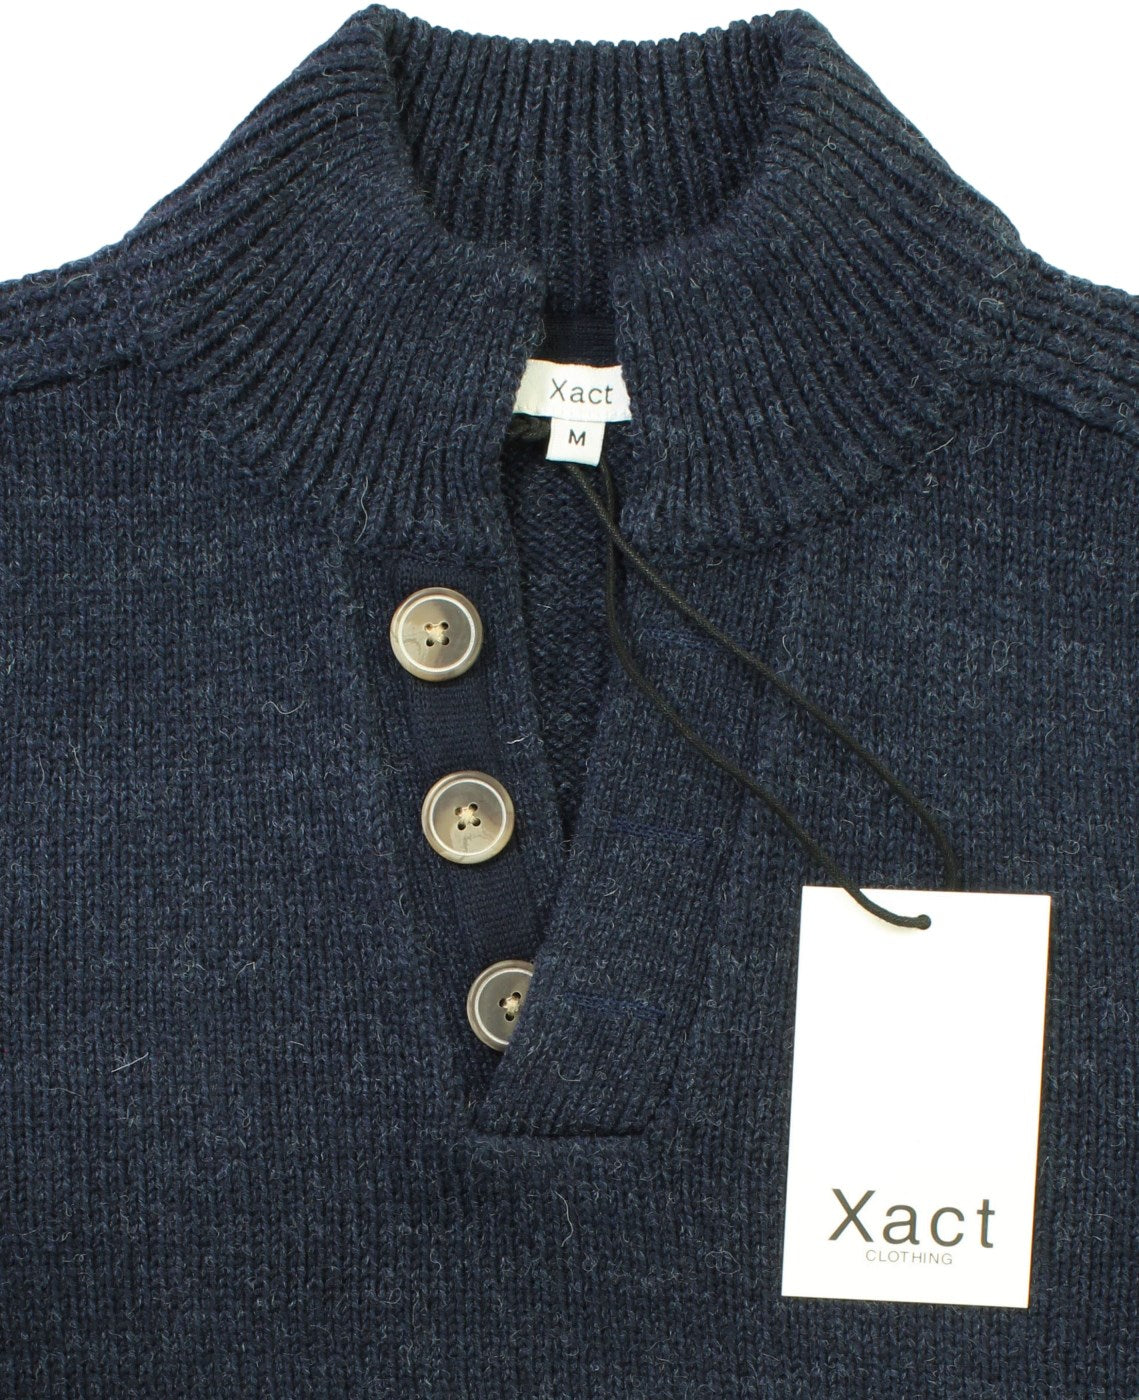 Xact Mens 3 Button Wool Blend Jumper (Indigo Marl Twist, S)-4